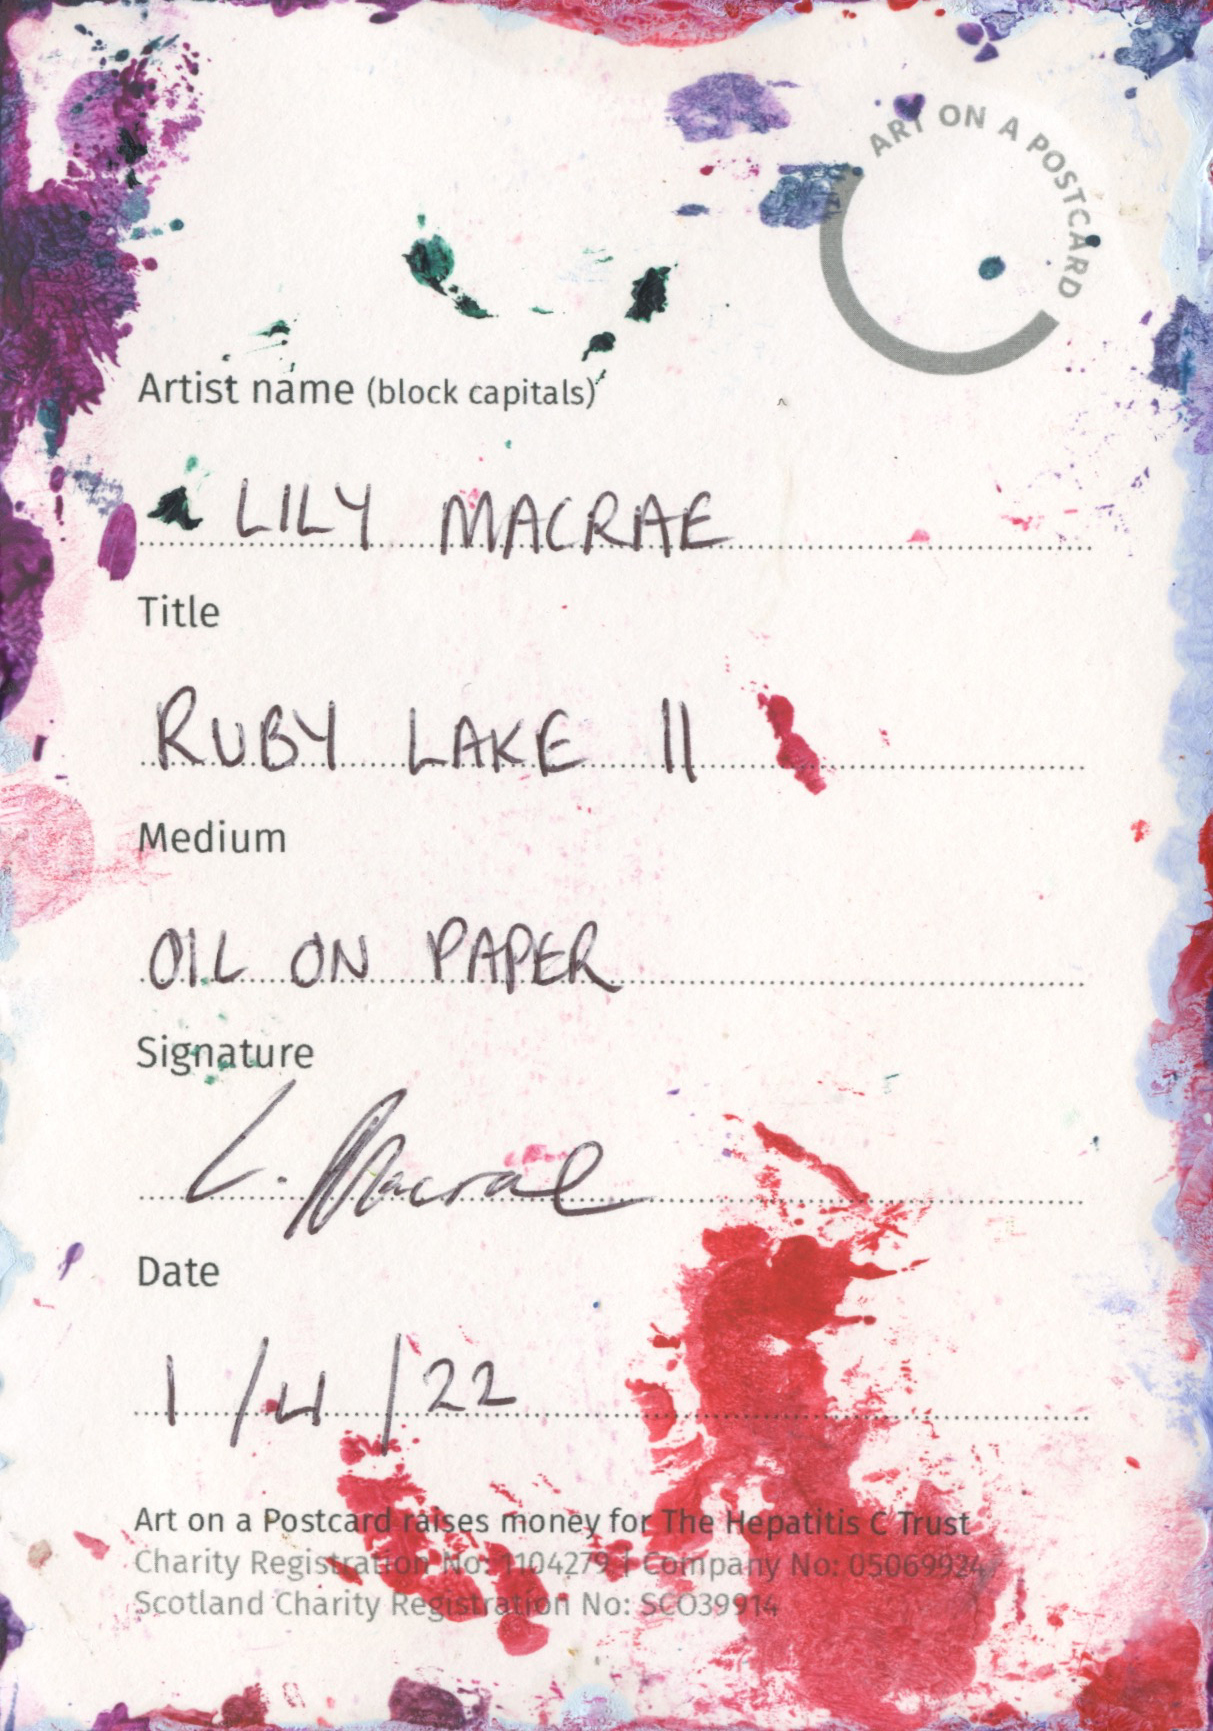 47. Lily Macrae - Ruby Lake II - BACK